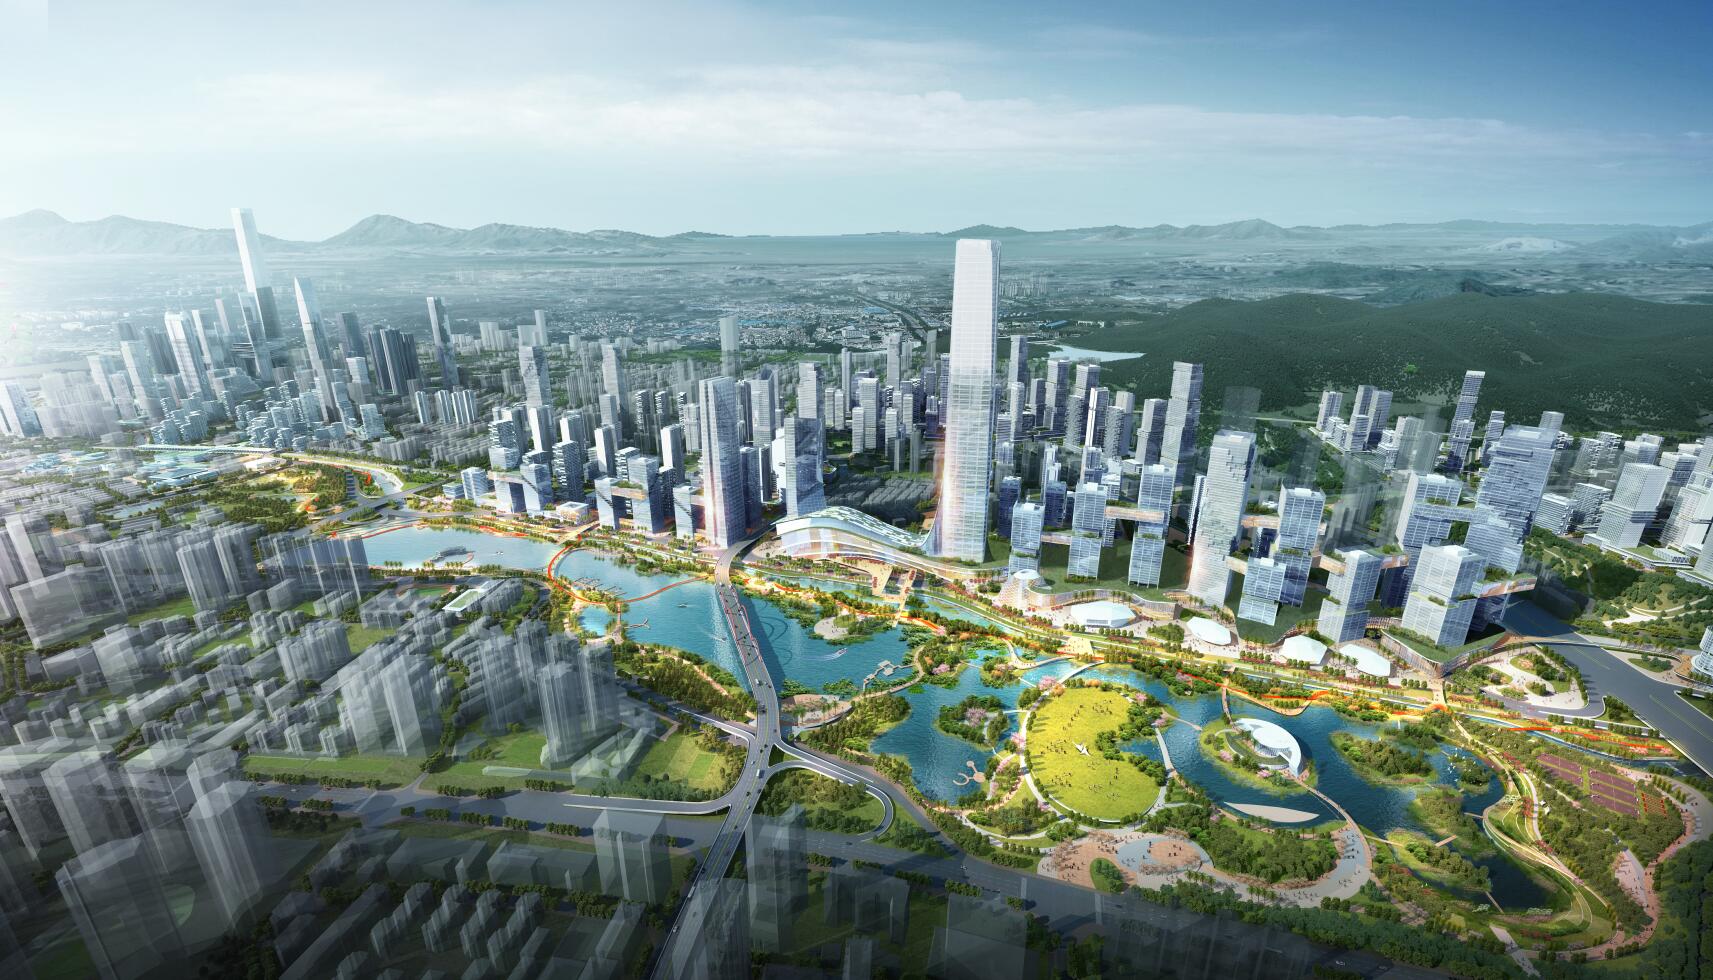 2022布吉公园游玩攻略,布吉公园位于深圳龙岗区金龙...【去哪儿攻略】